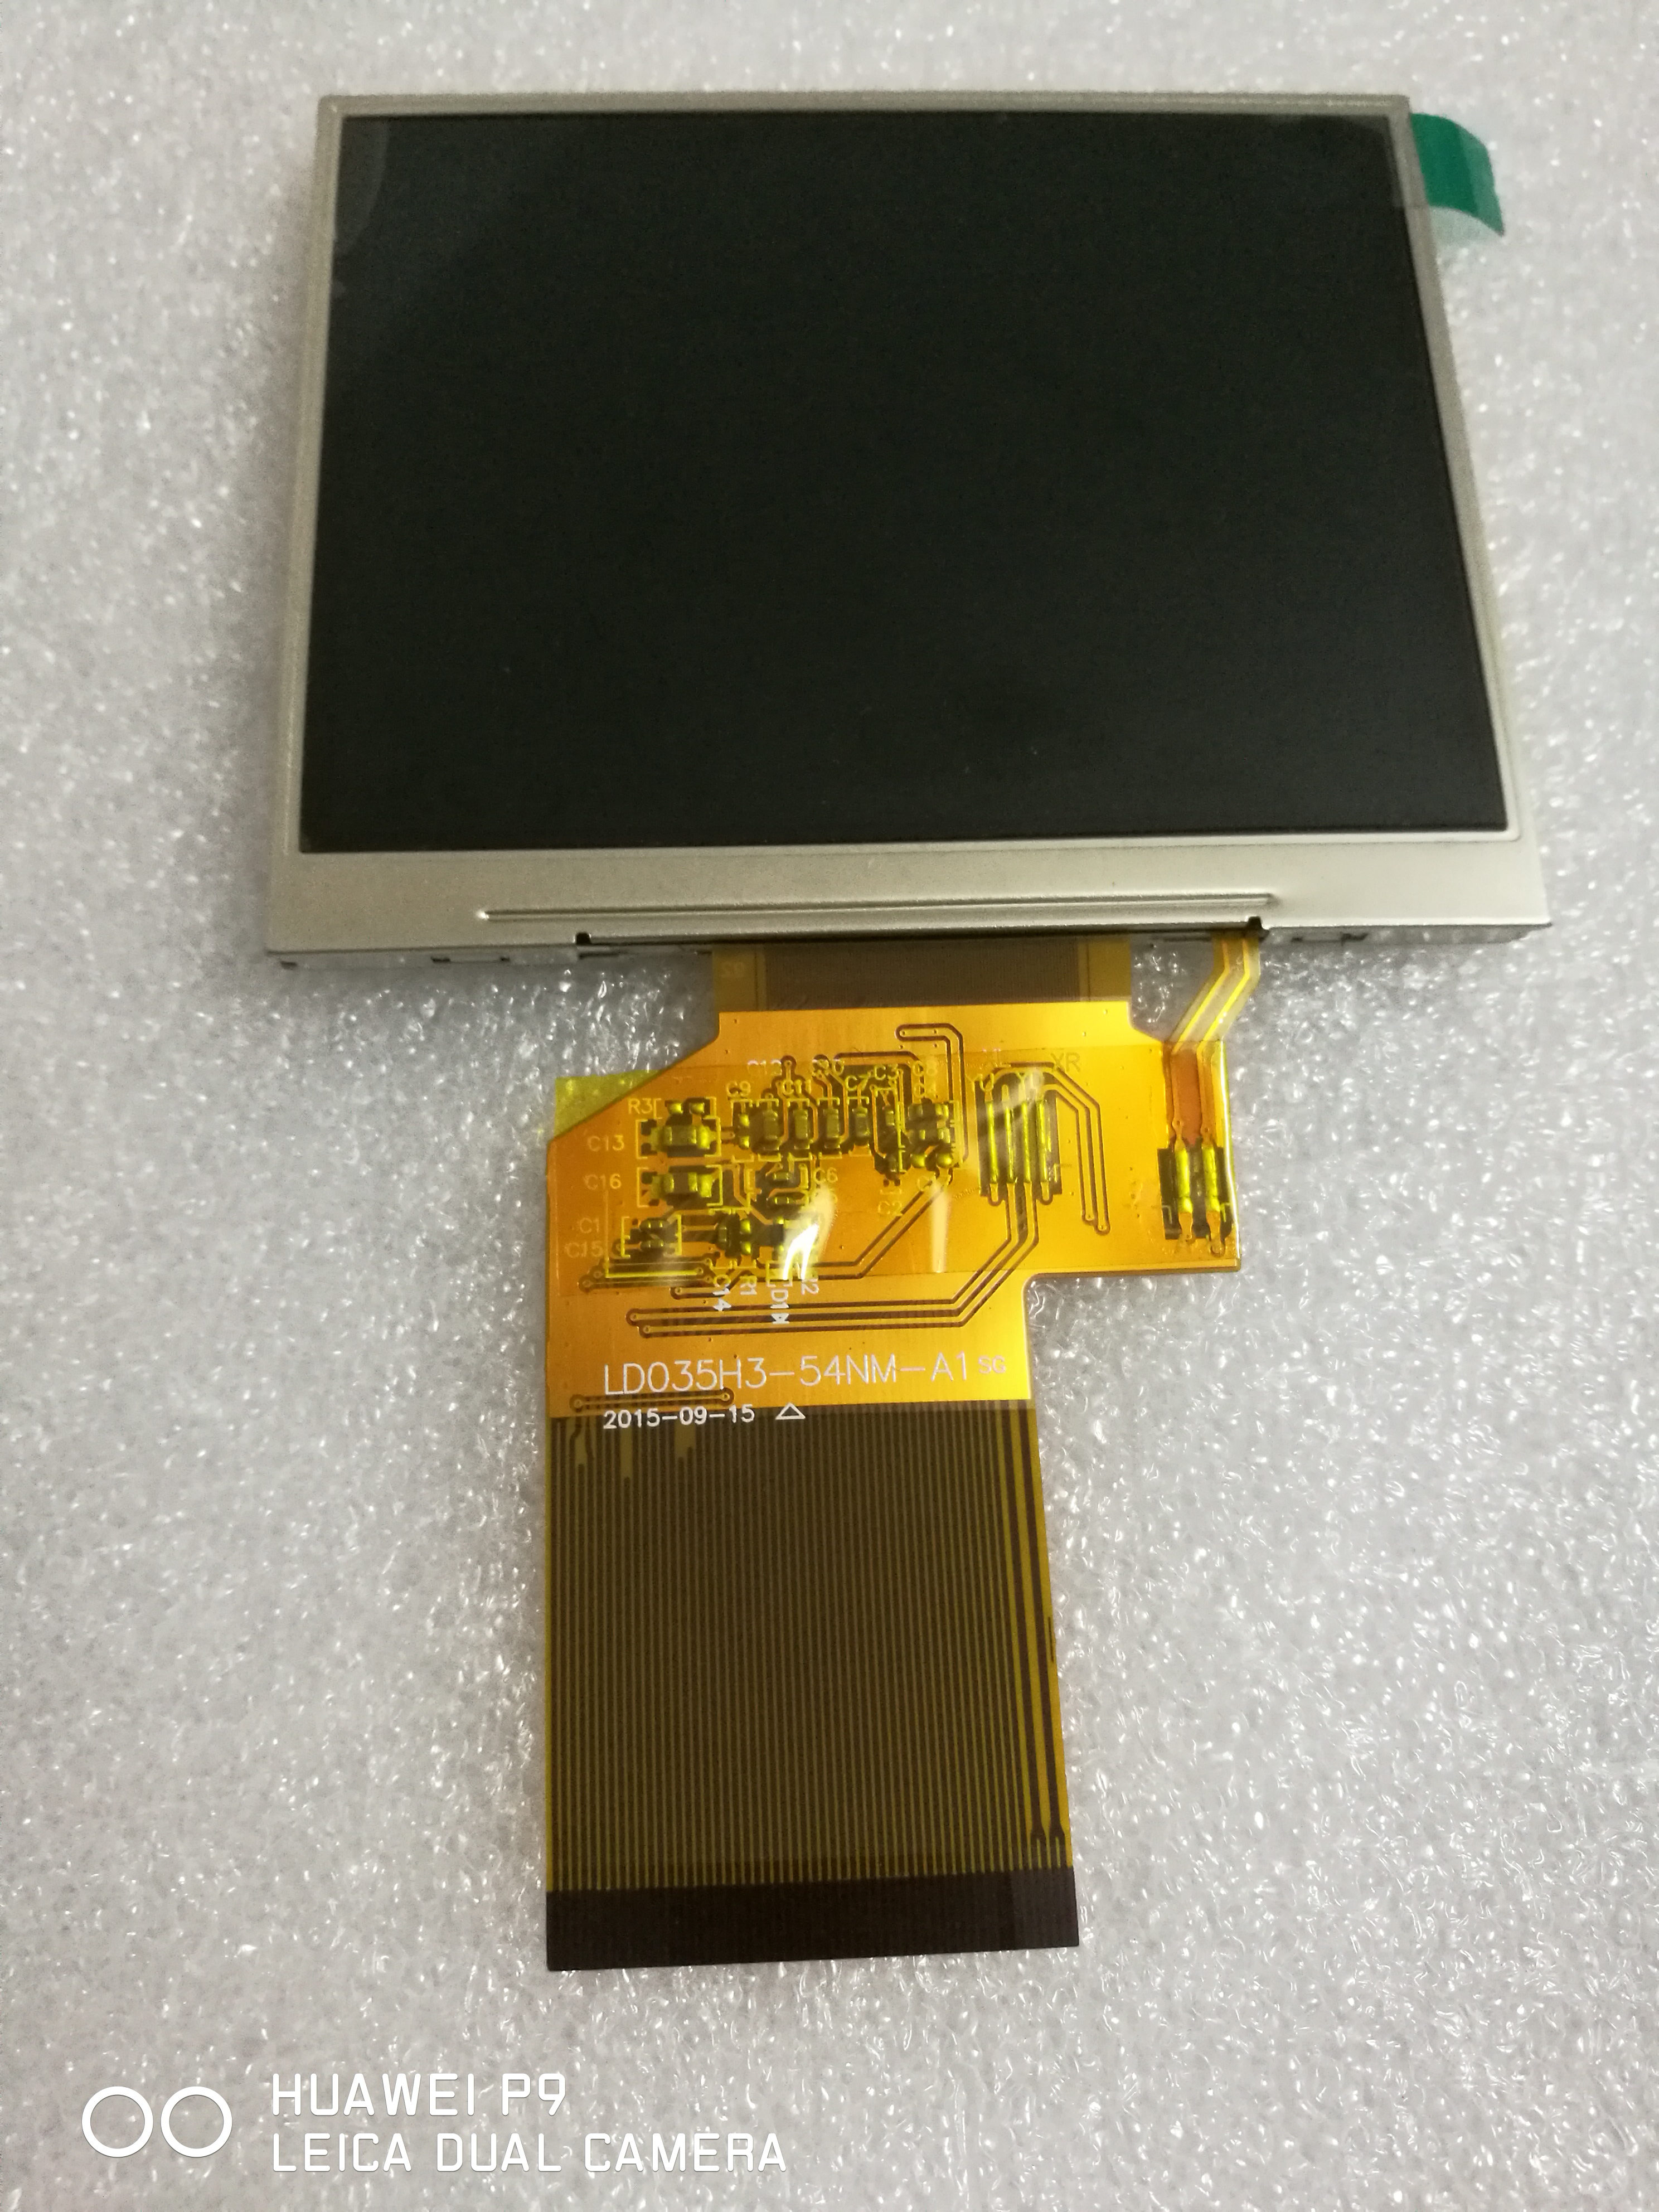 3.5寸东华屏LD035H3-54NM-A1 RGB接口TFT屏(320×240,不带触摸)